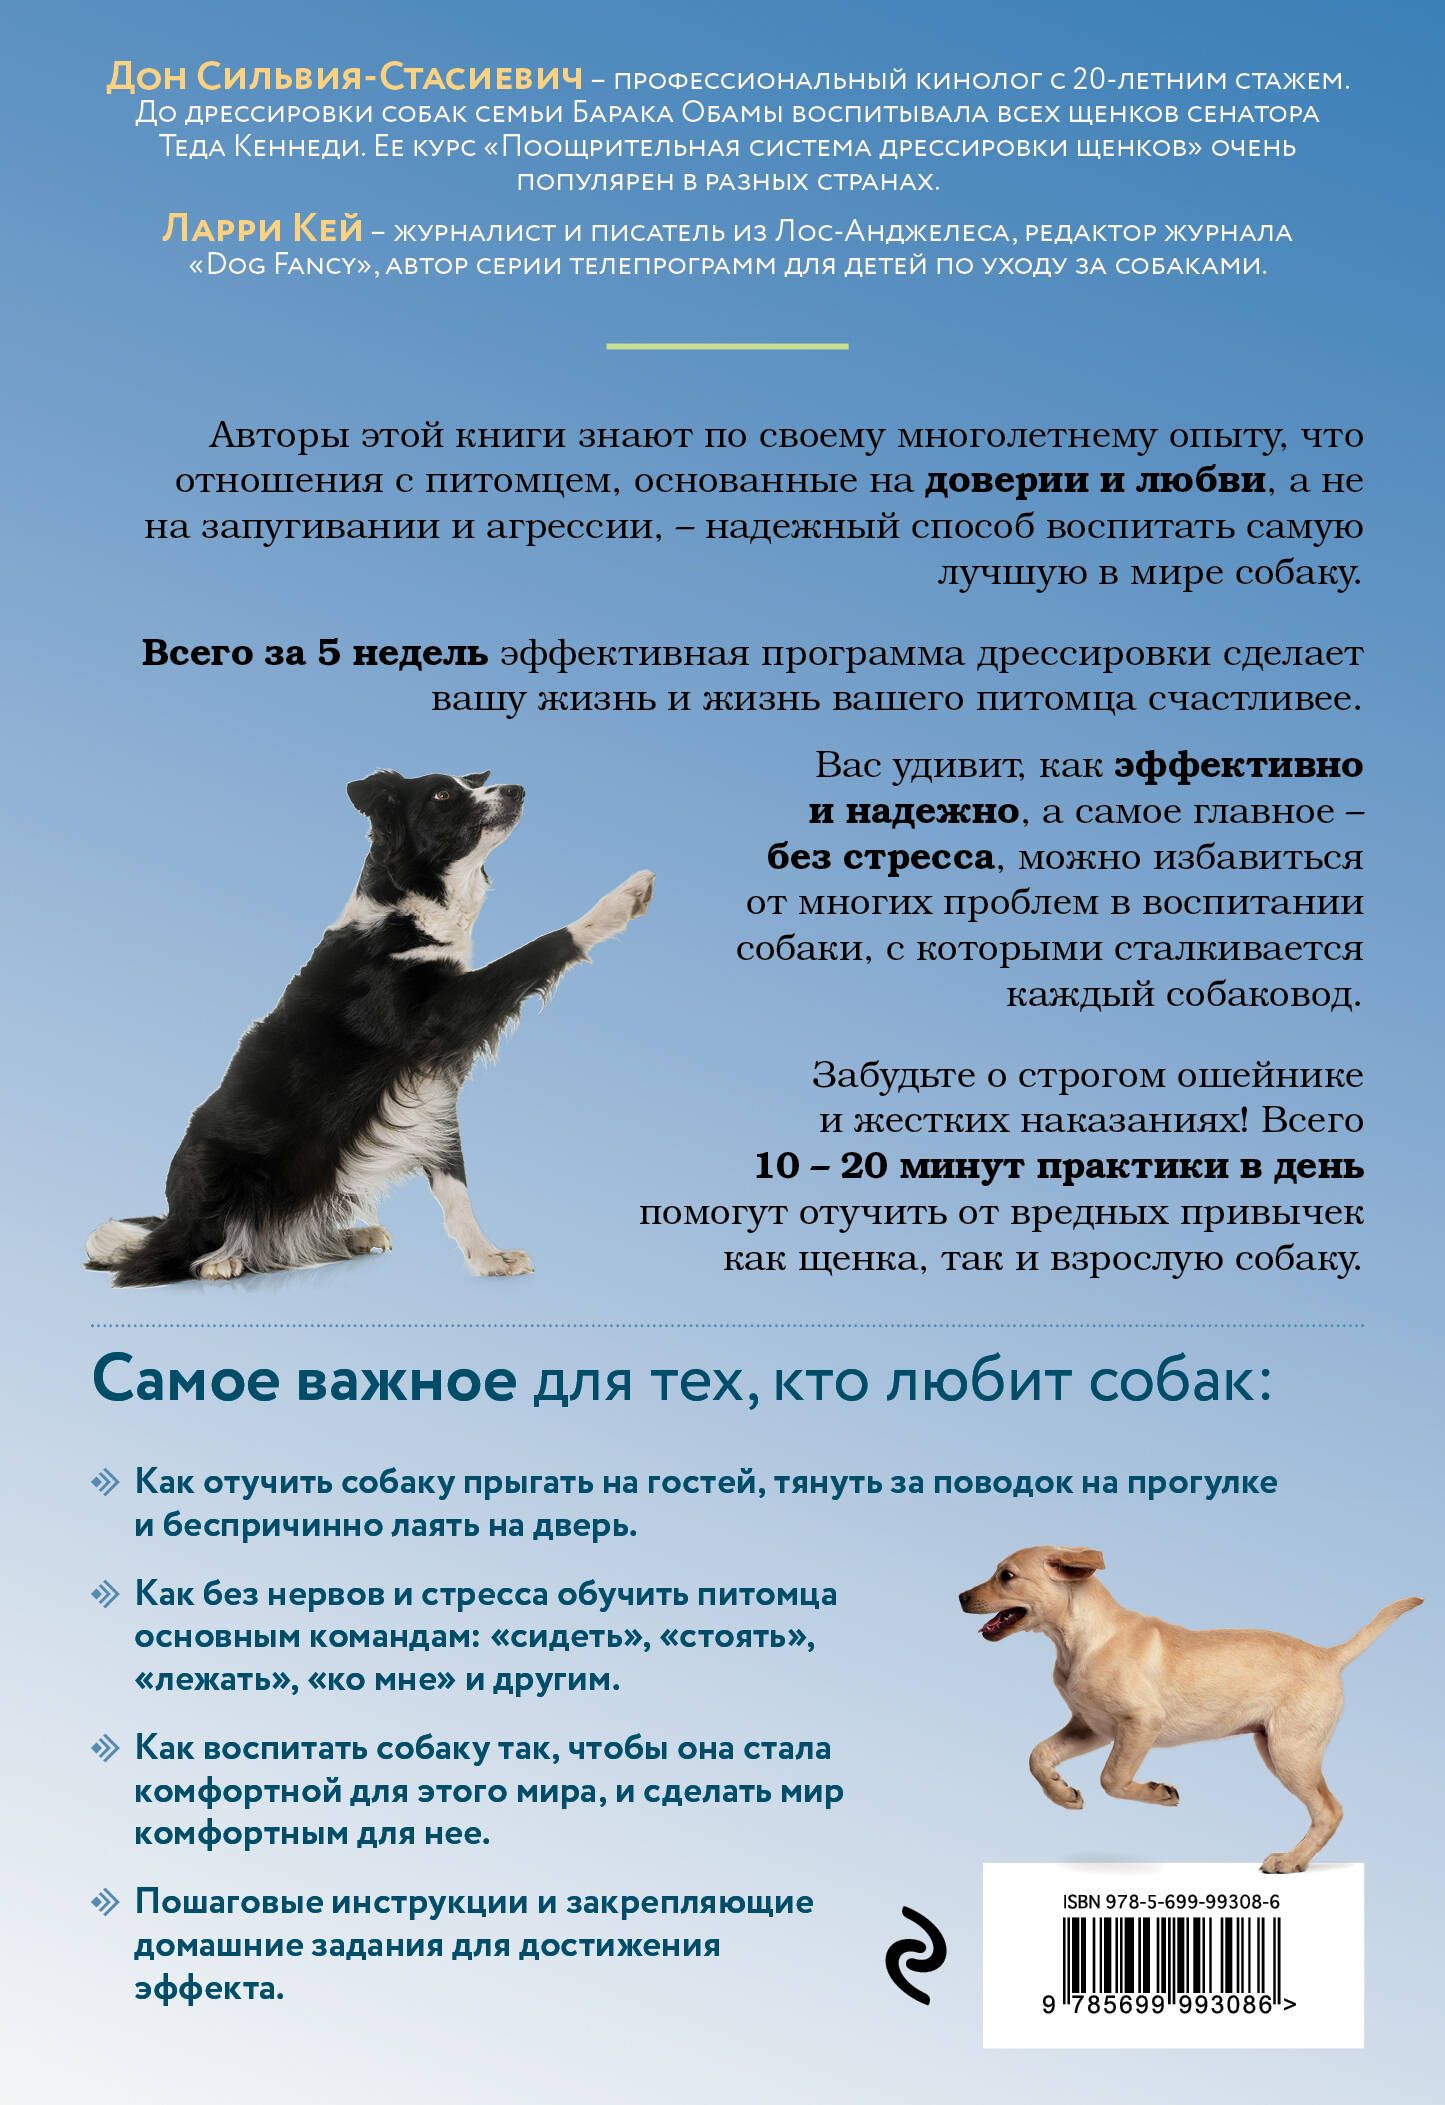 Основы самостоятельной дрессировки собак и щенков разных пород